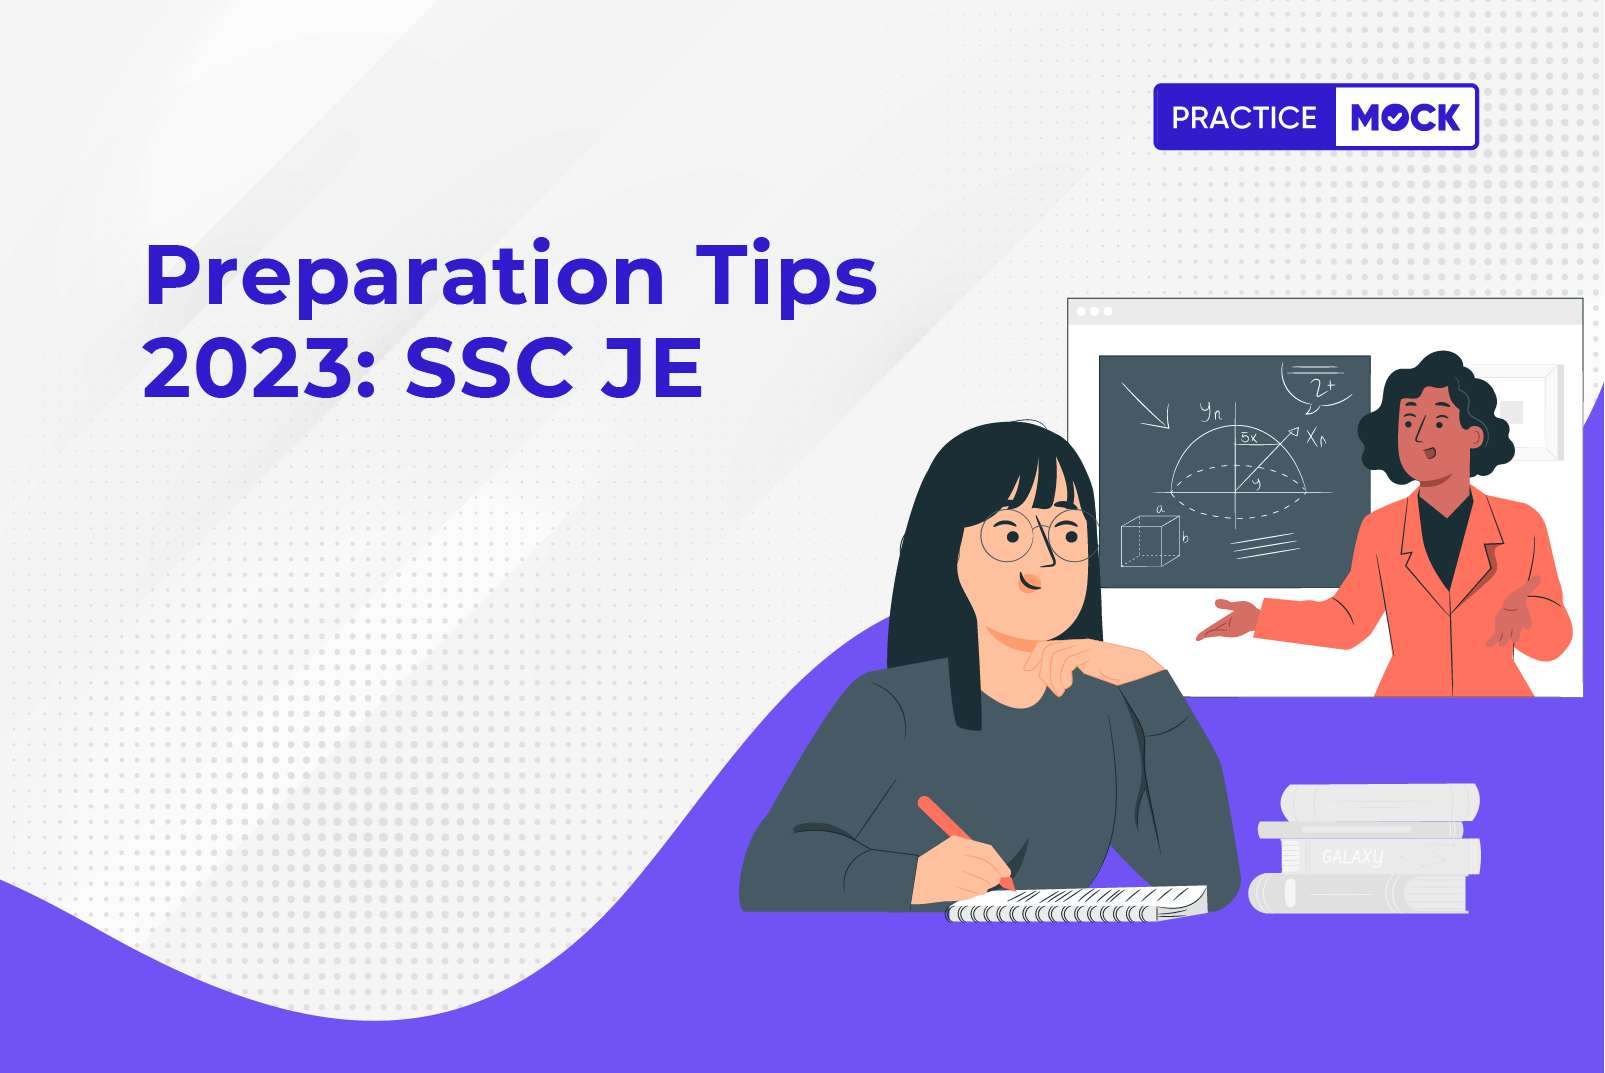 FI_SSC_JE_Preparation_Tips_200623 (1)